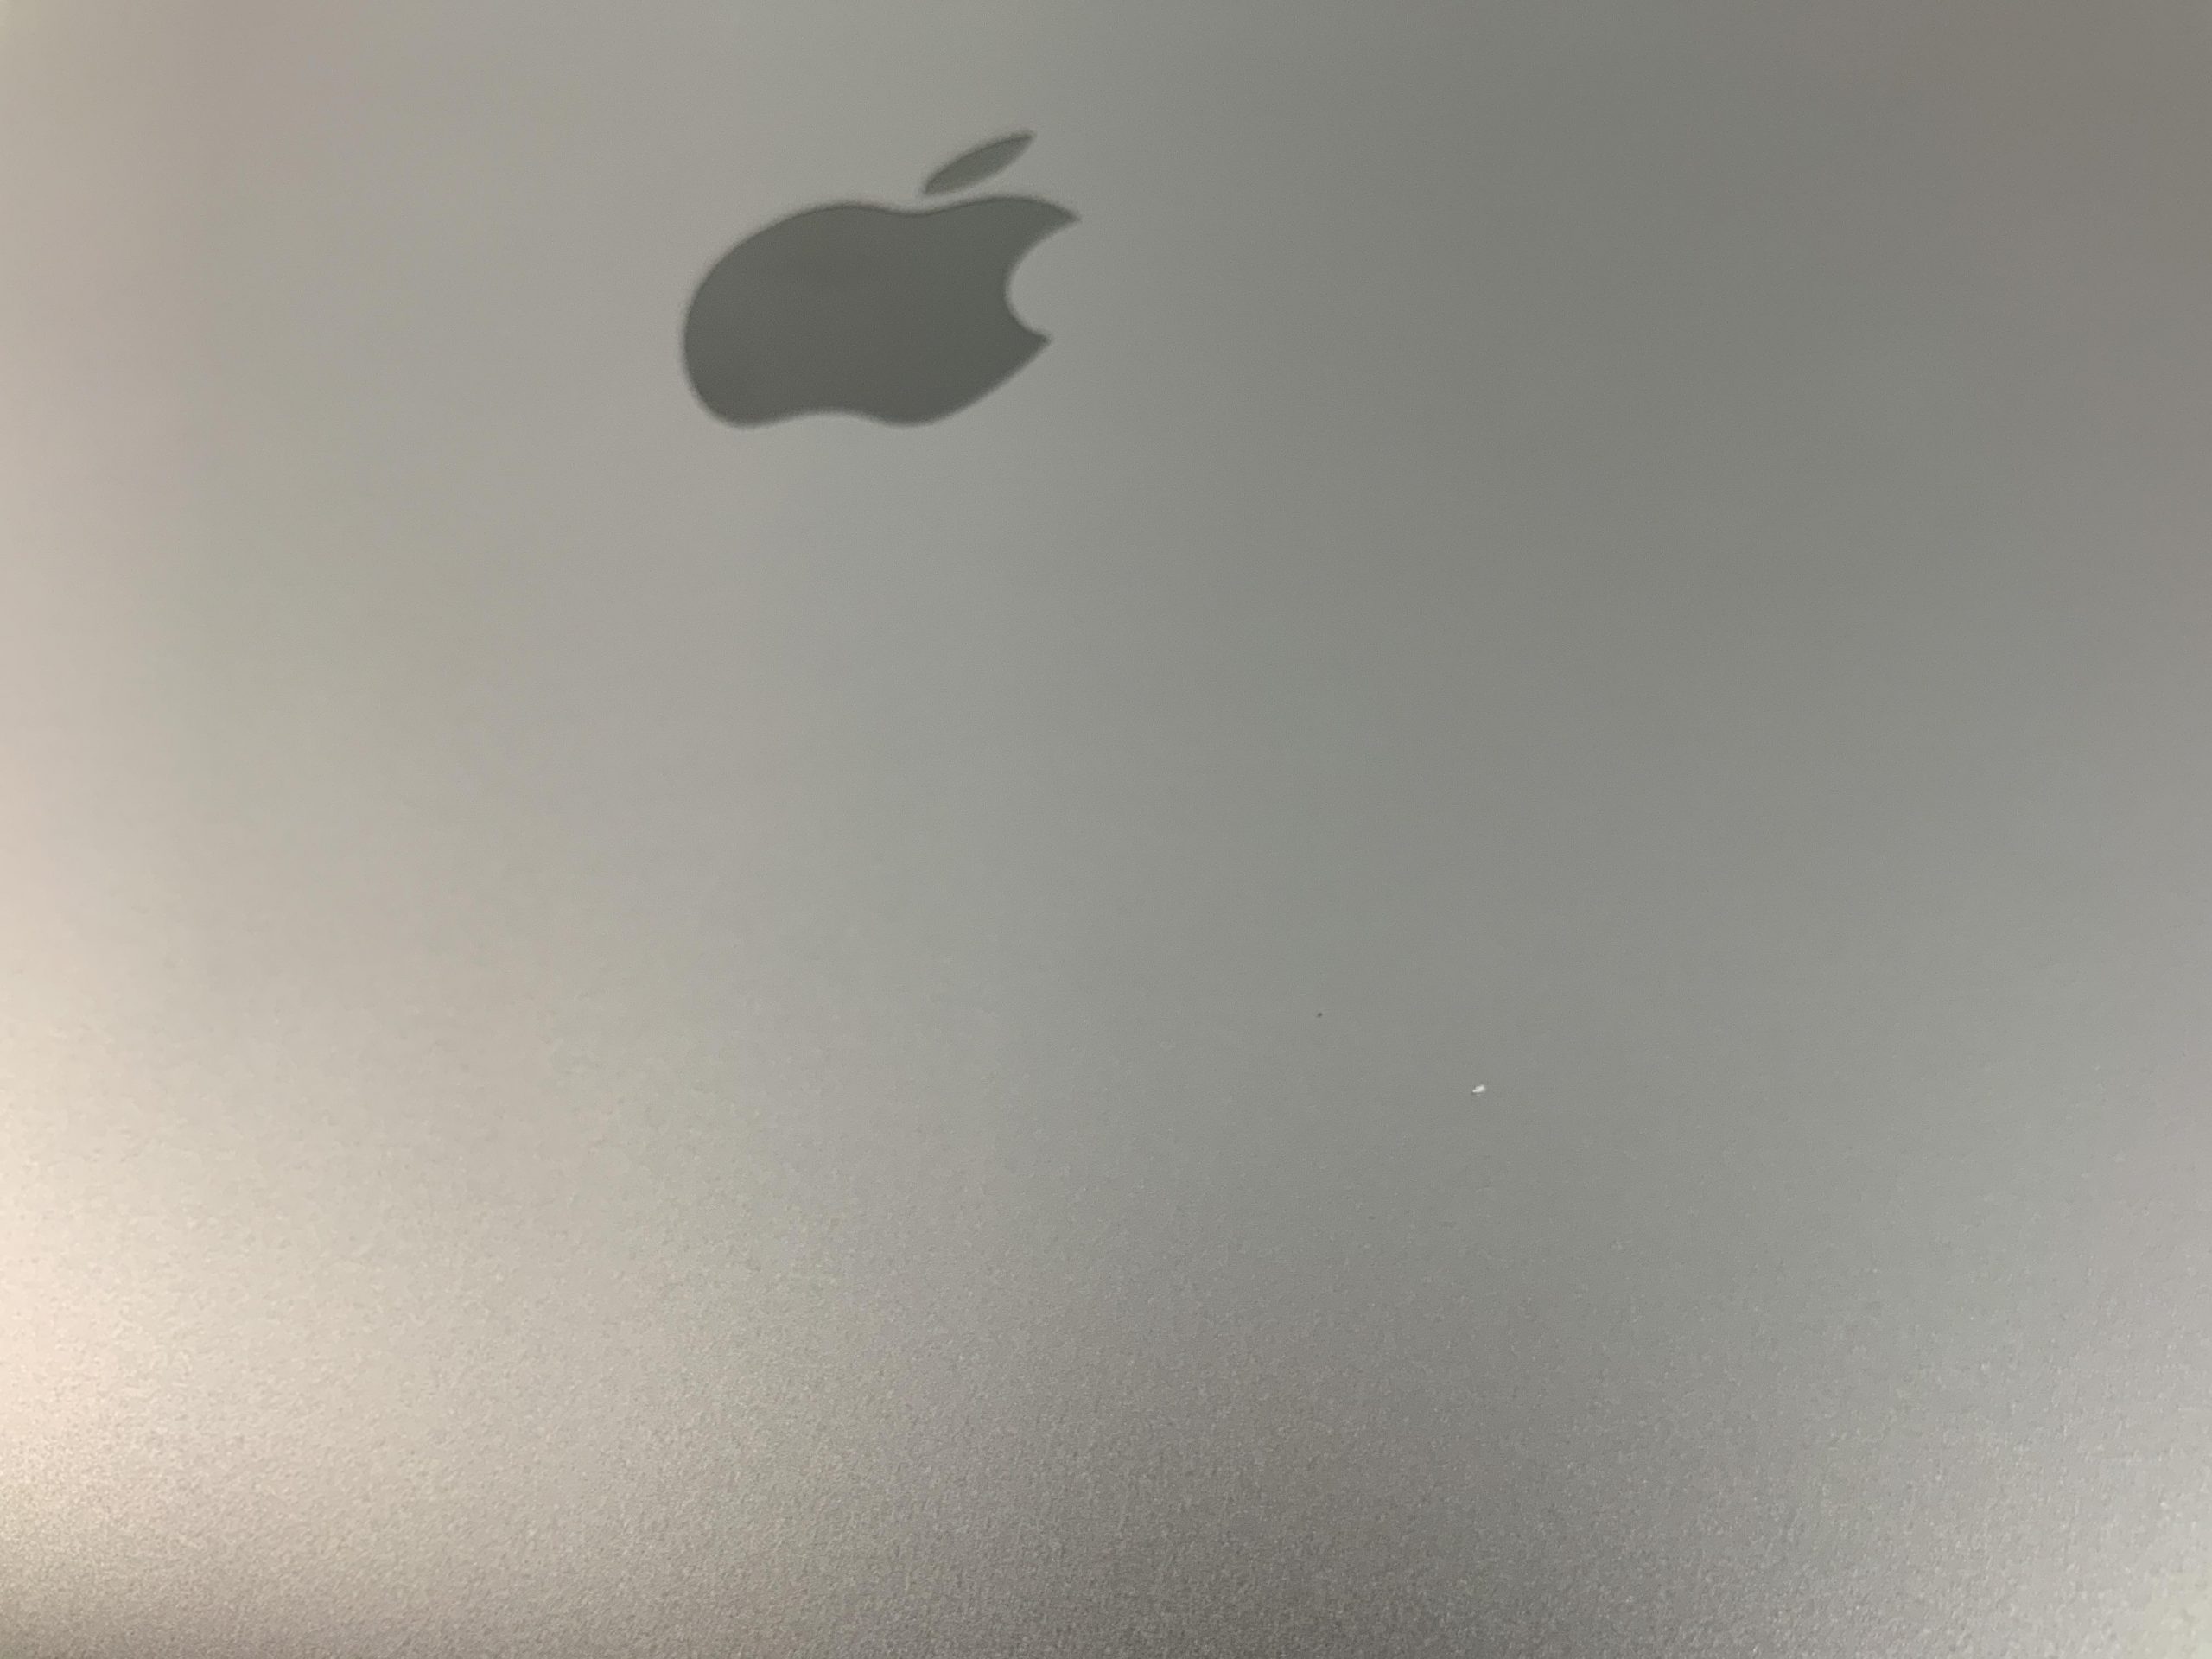 MacBook Air 13" Mid 2019 (Intel Core i5 1.6 GHz 8 GB RAM 512 GB SSD), Space Gray, Intel Core i5 1.6 GHz, 8 GB RAM, 512 GB SSD, immagine 4